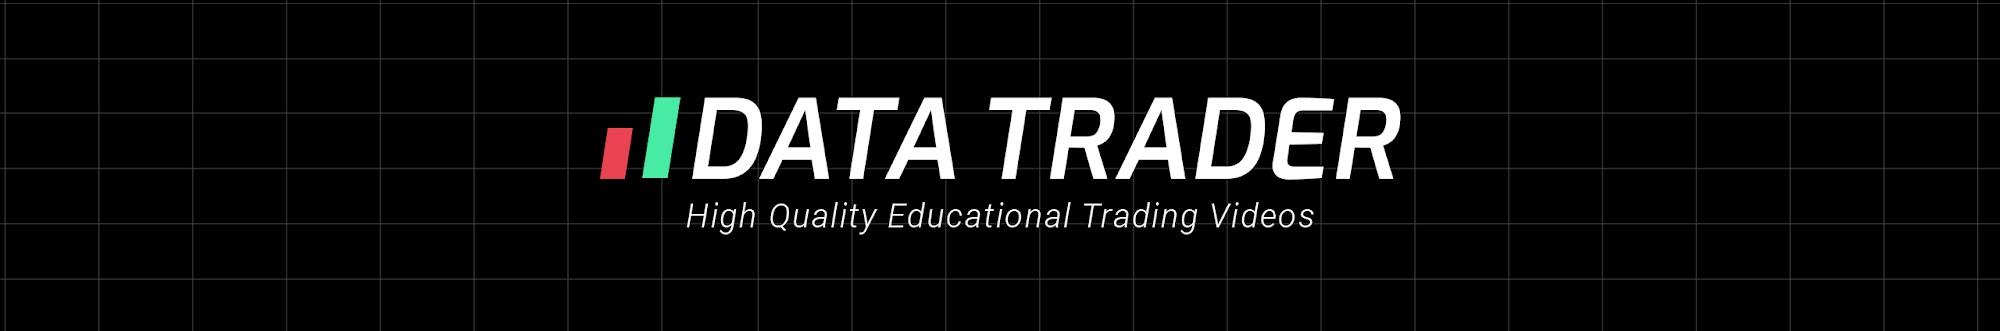 Data Trader